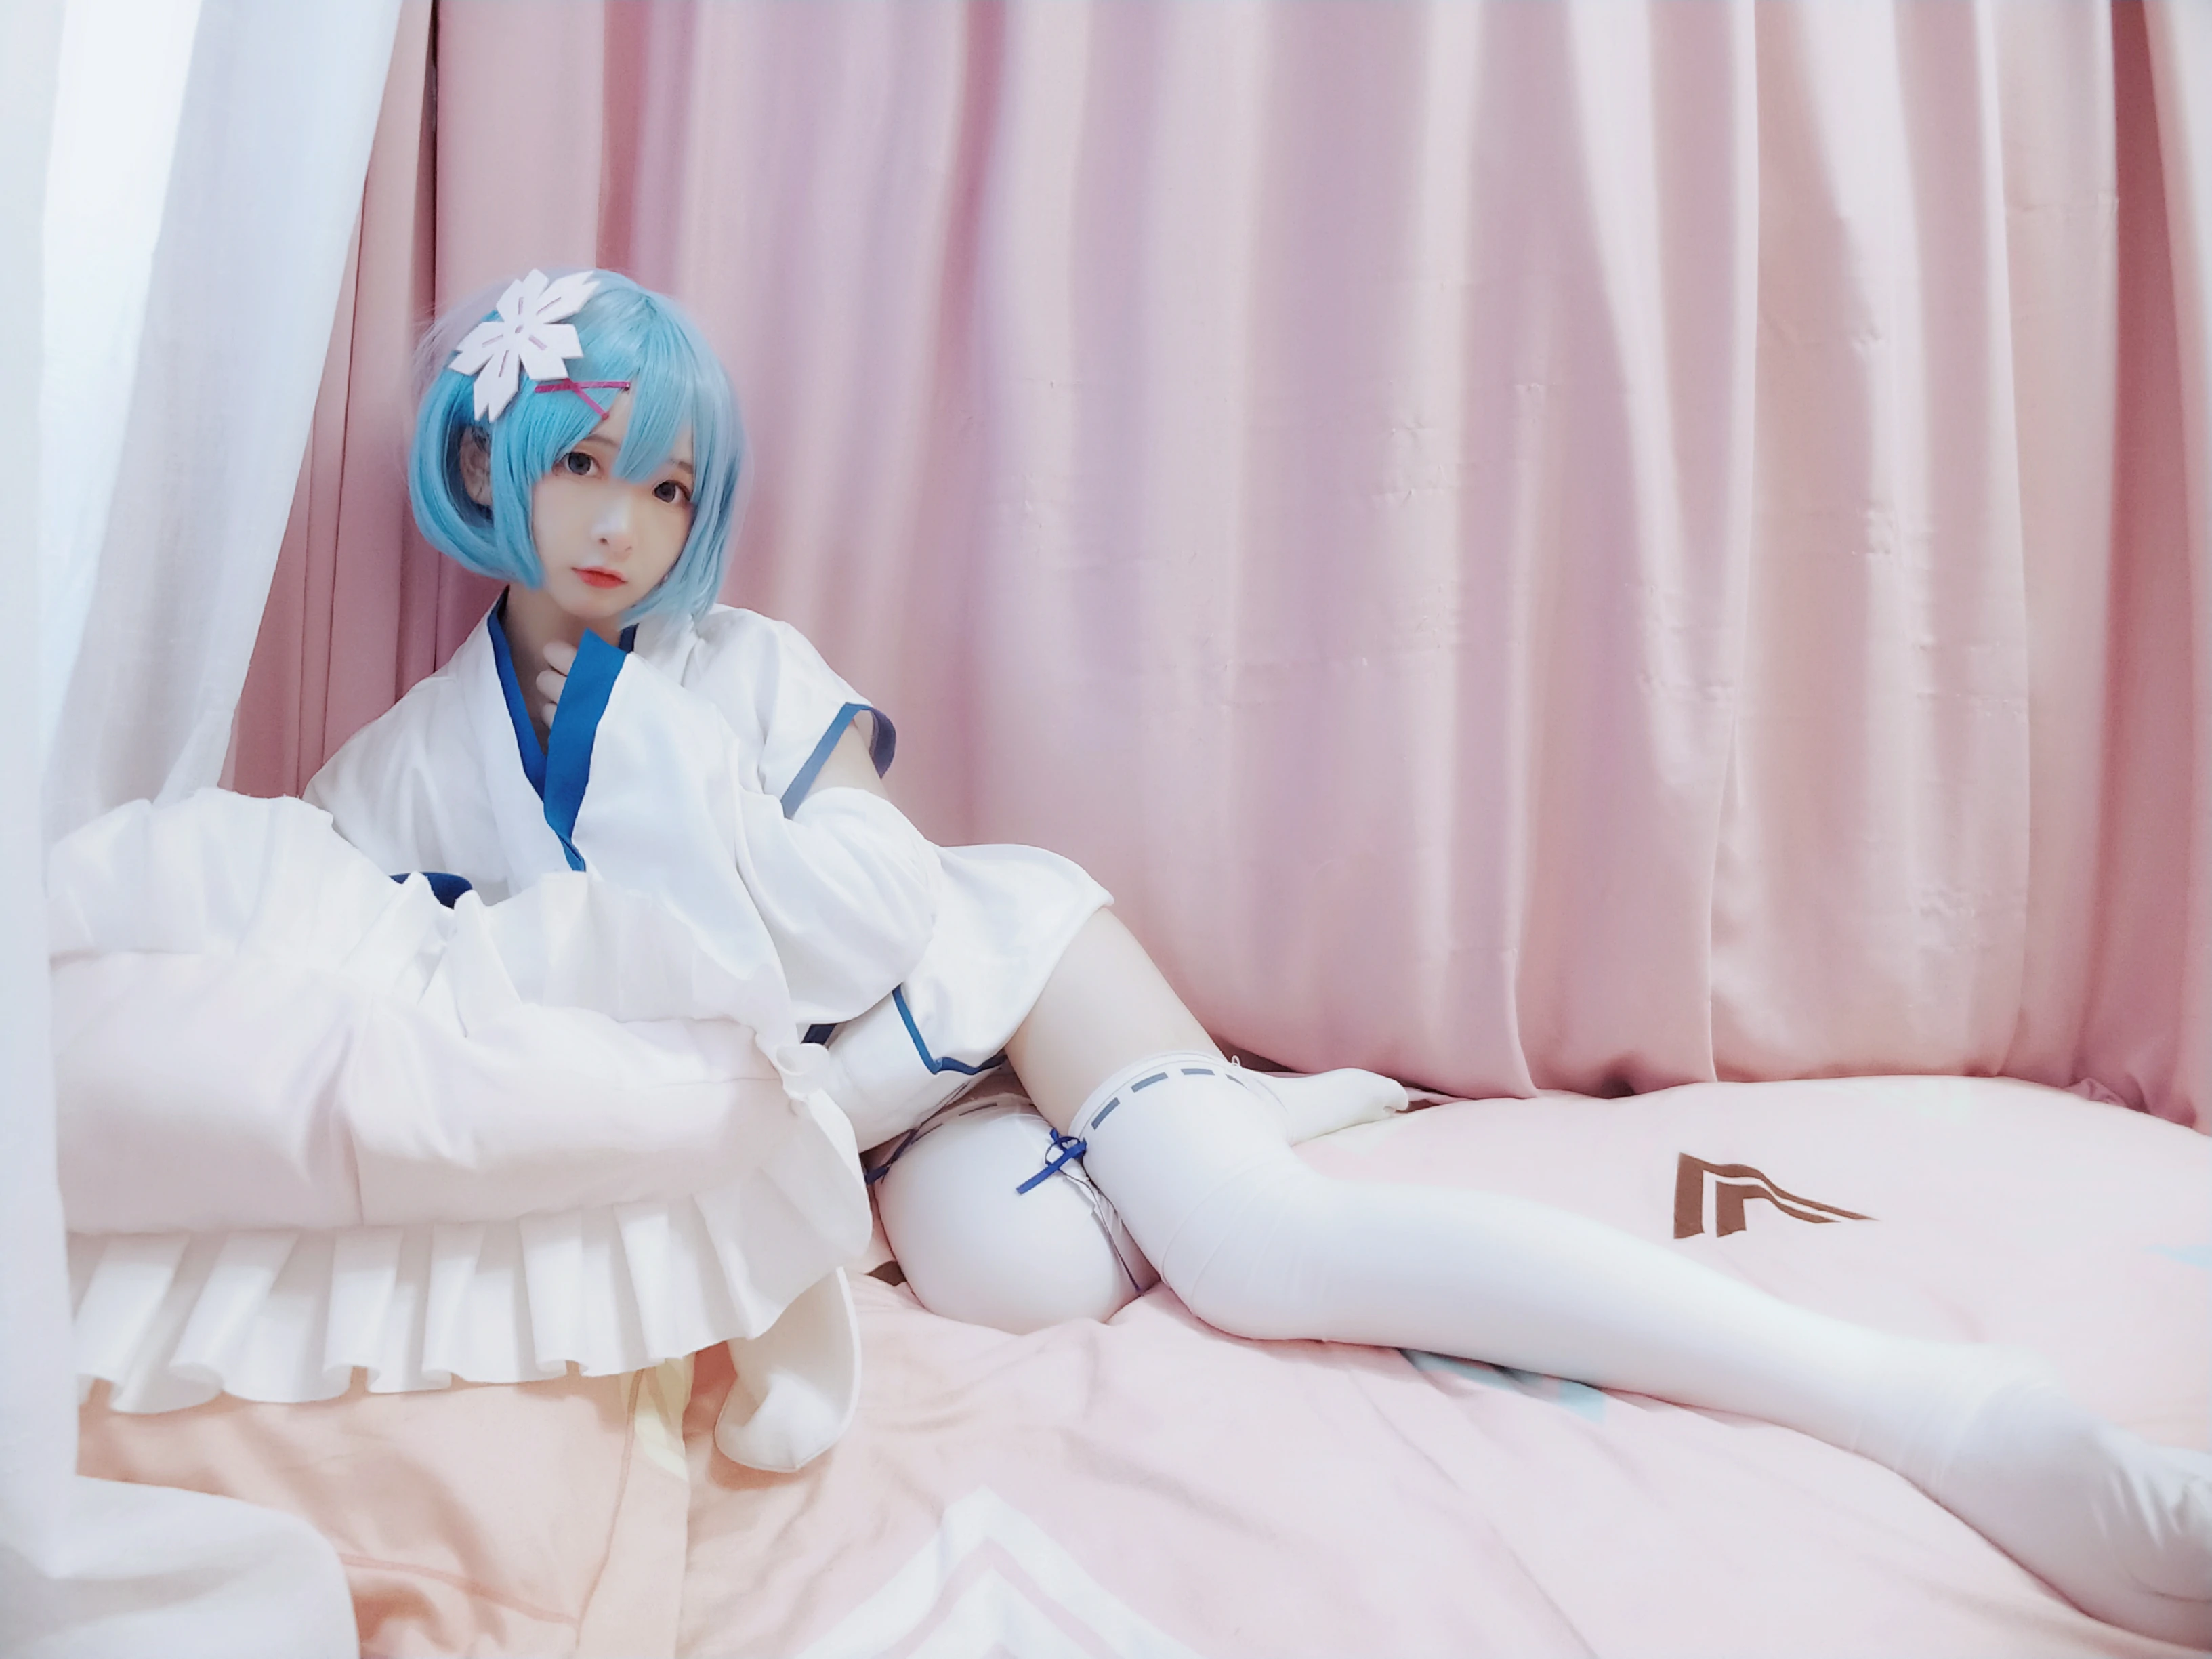 网红清纯少女 古川kagura 蓝色睡衣与白色和服加丝袜美腿私房写真,